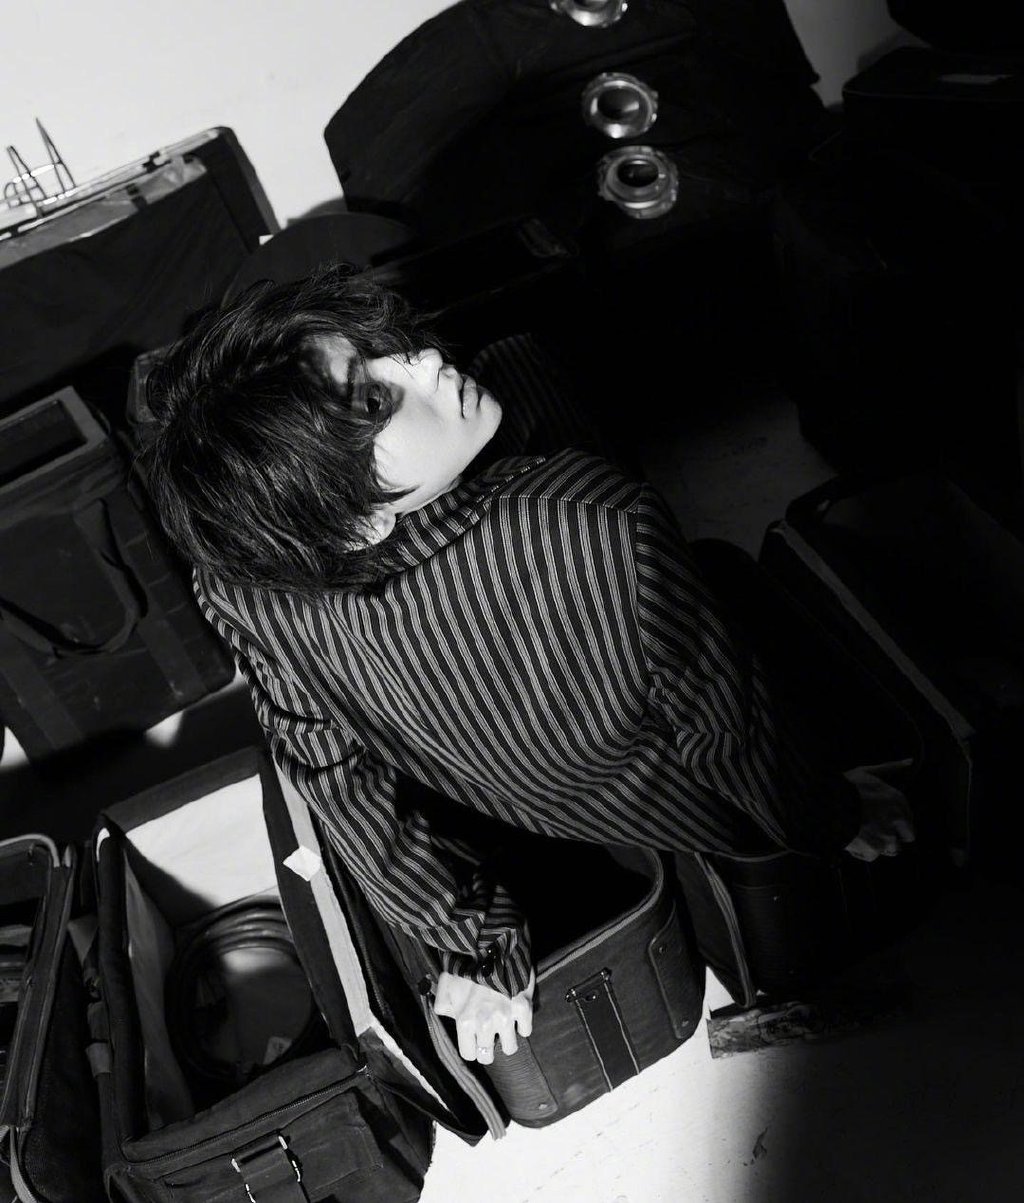 蔡徐坤慵懒安静氛围感满满秋装穿搭楼梯间帅气黑白写真图片图片